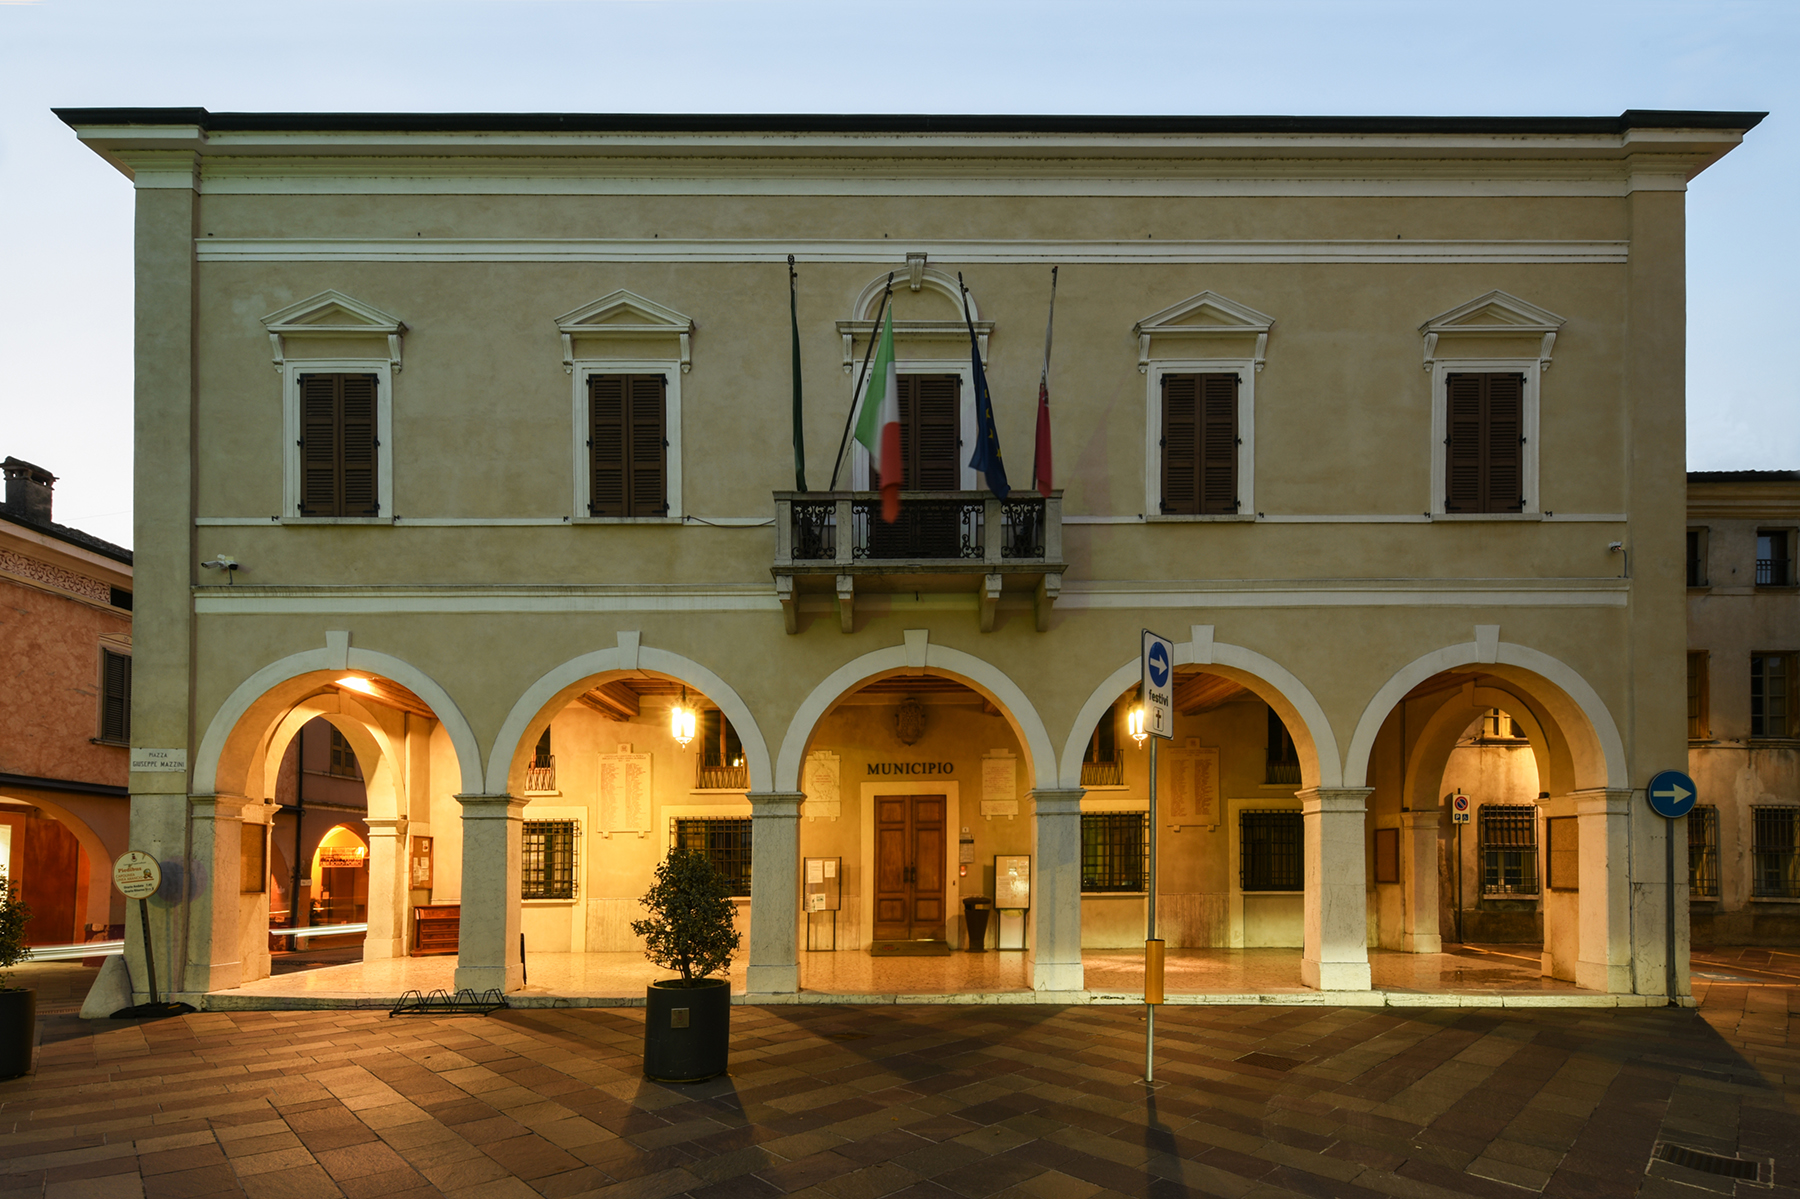 EDIFICIO COMUNALE | Castel Goffredo - Mantova – Italia. Case Study PERFOMANCE iN LIGHTING.